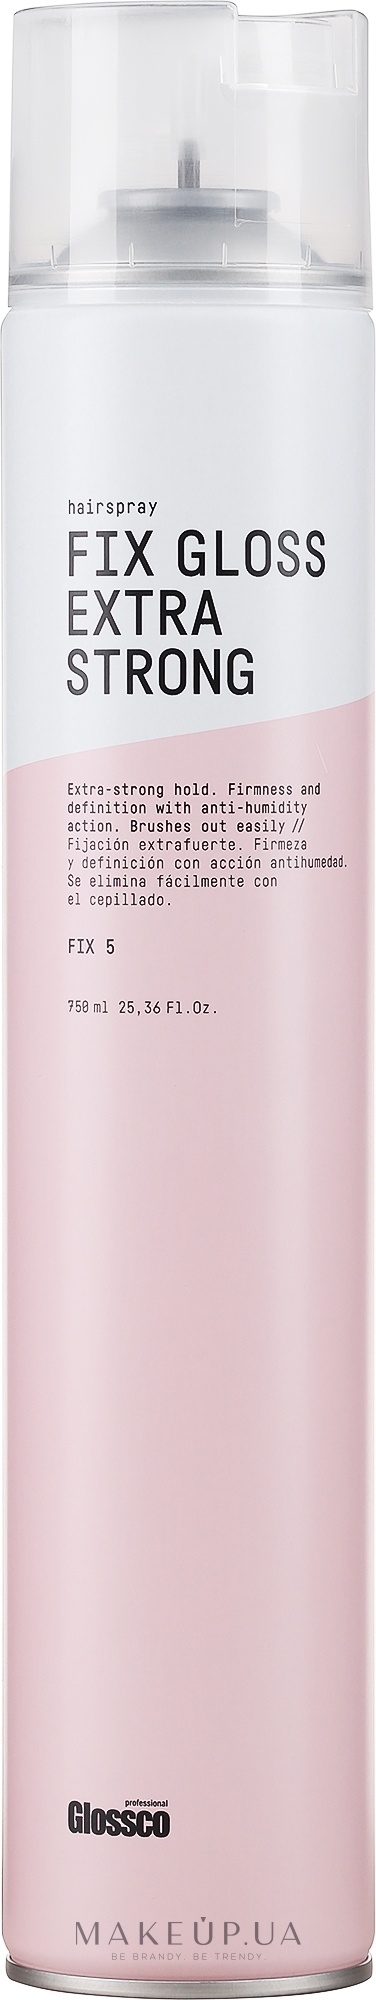 Лак для волос экстрасильной фиксации - Glossco Fix Gloss Exrta Strong Hairspray Fixer — фото 750ml